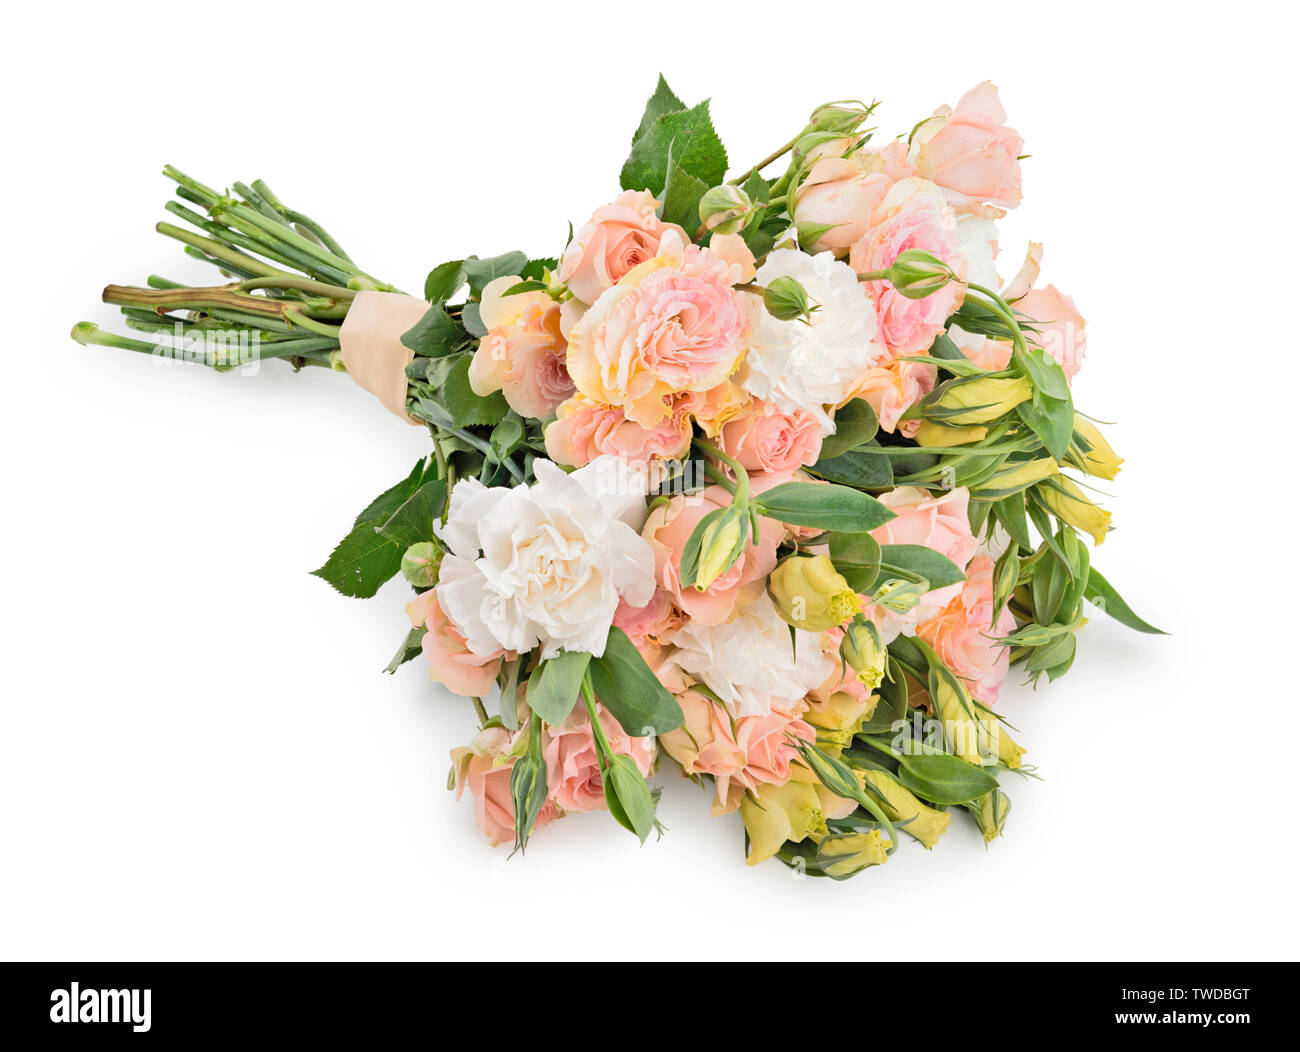 Magnifique bouquet de fleurs rose tendre sur fond blanc Banque D'Images